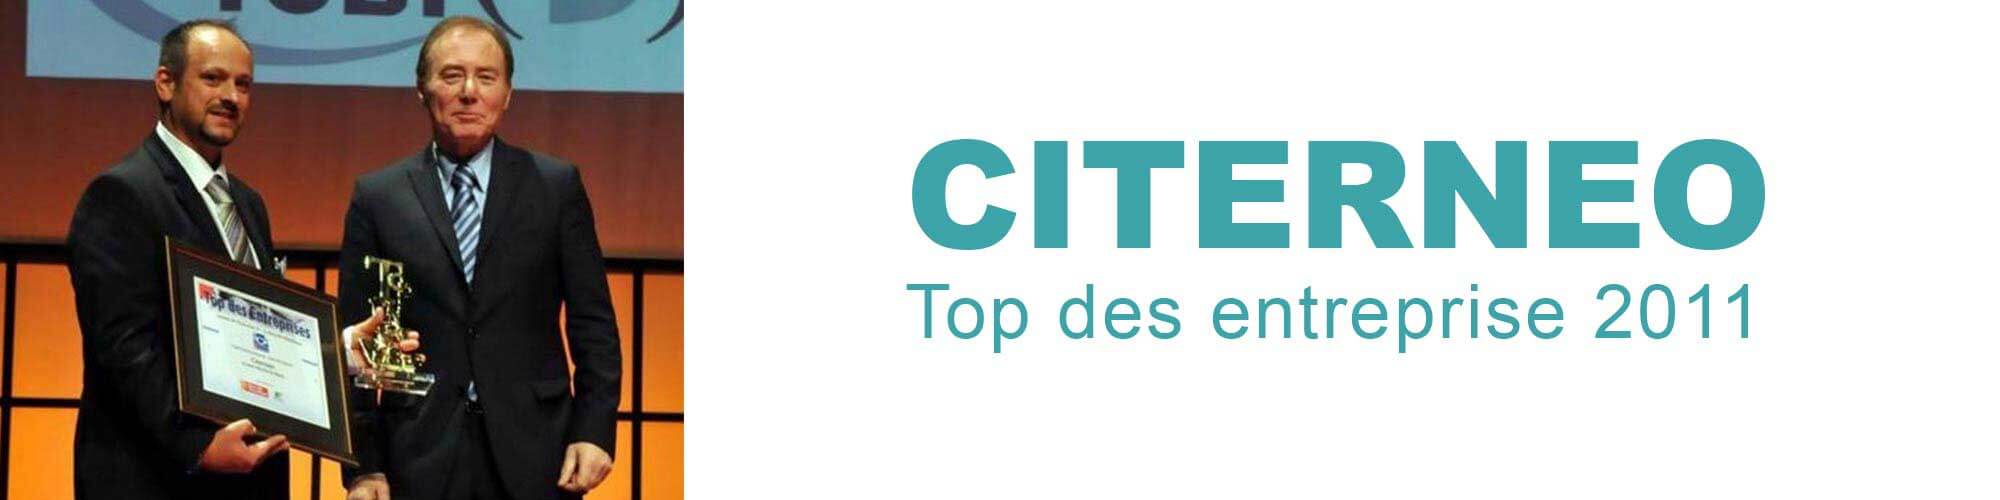 CITERNEO - Top des entreprises 2011